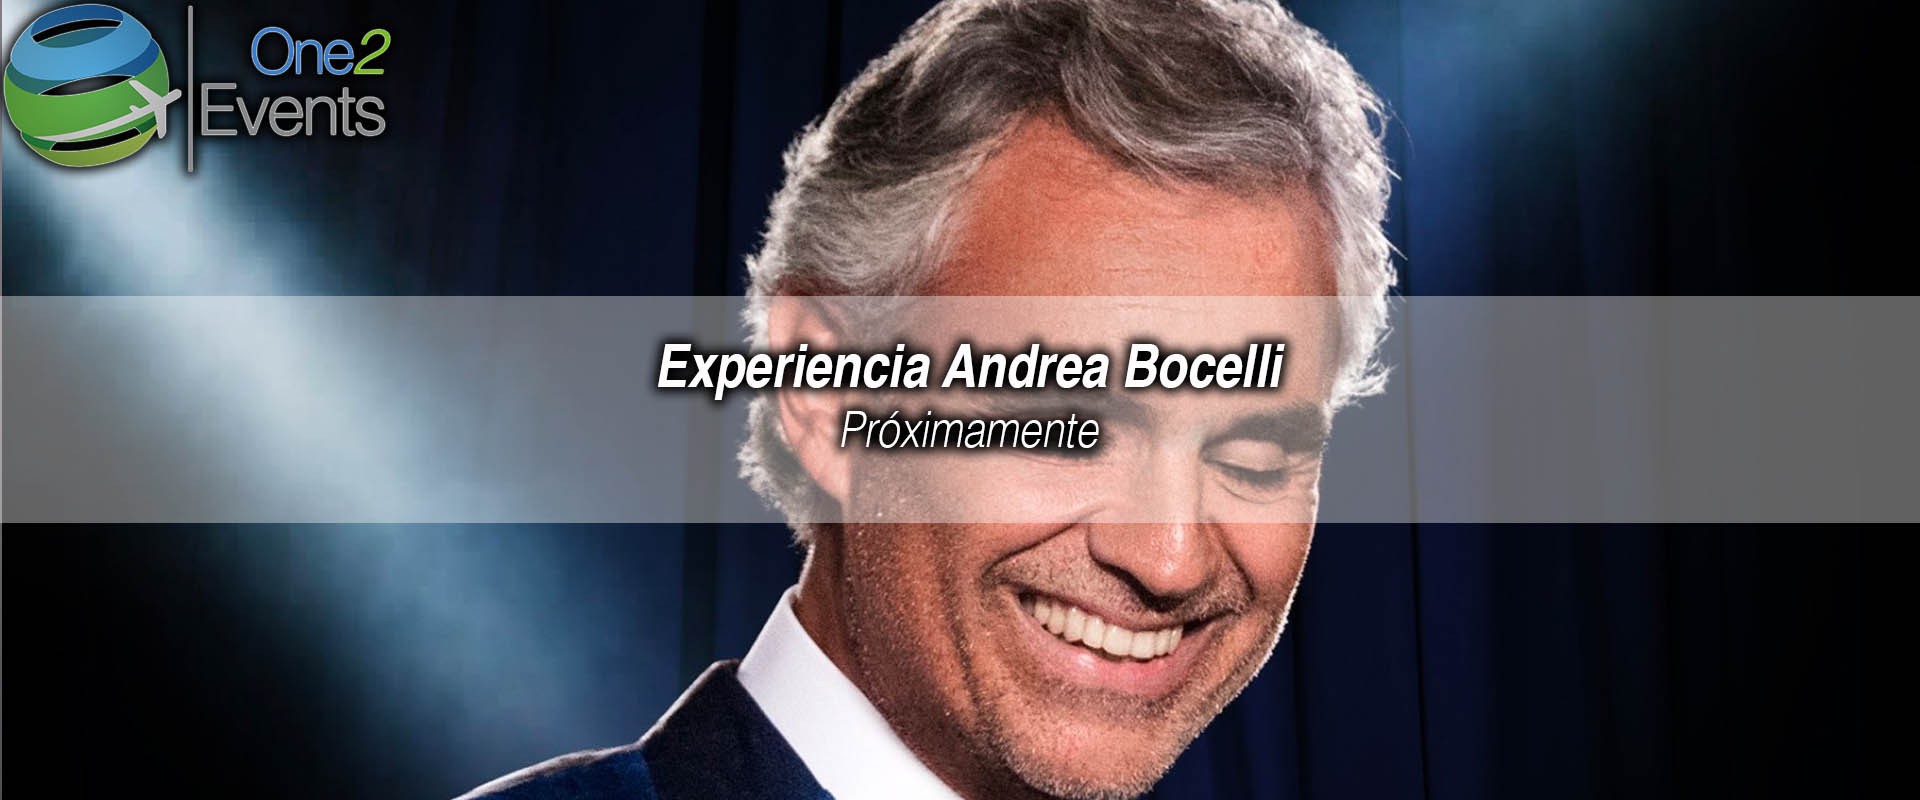 Concierto Andrea Bocelli en American Airlines, Dallas Conciertos One2